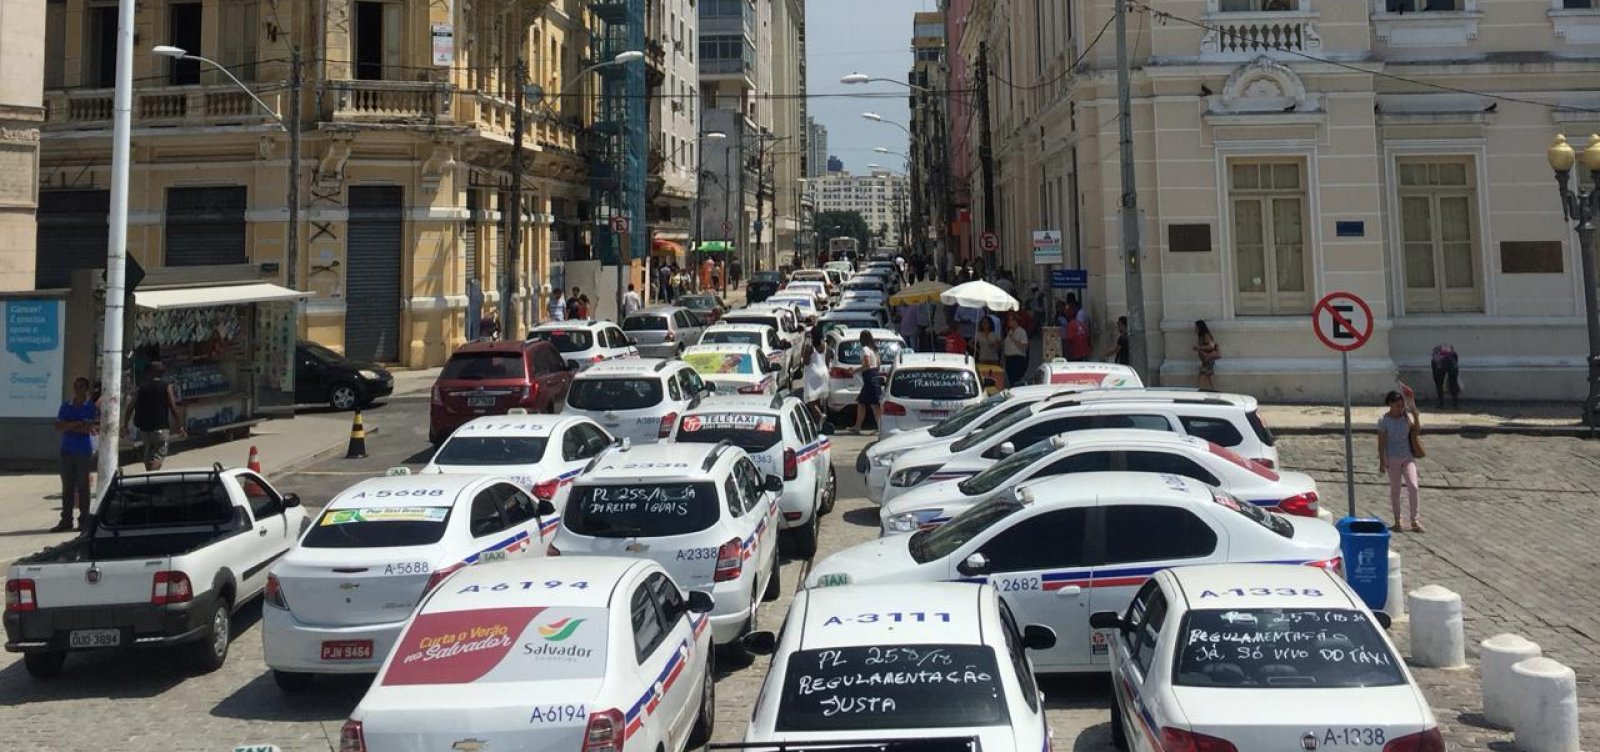 Motoristas de táxi e vans protestam em frente à CMS contra projeto dos apps de transporte